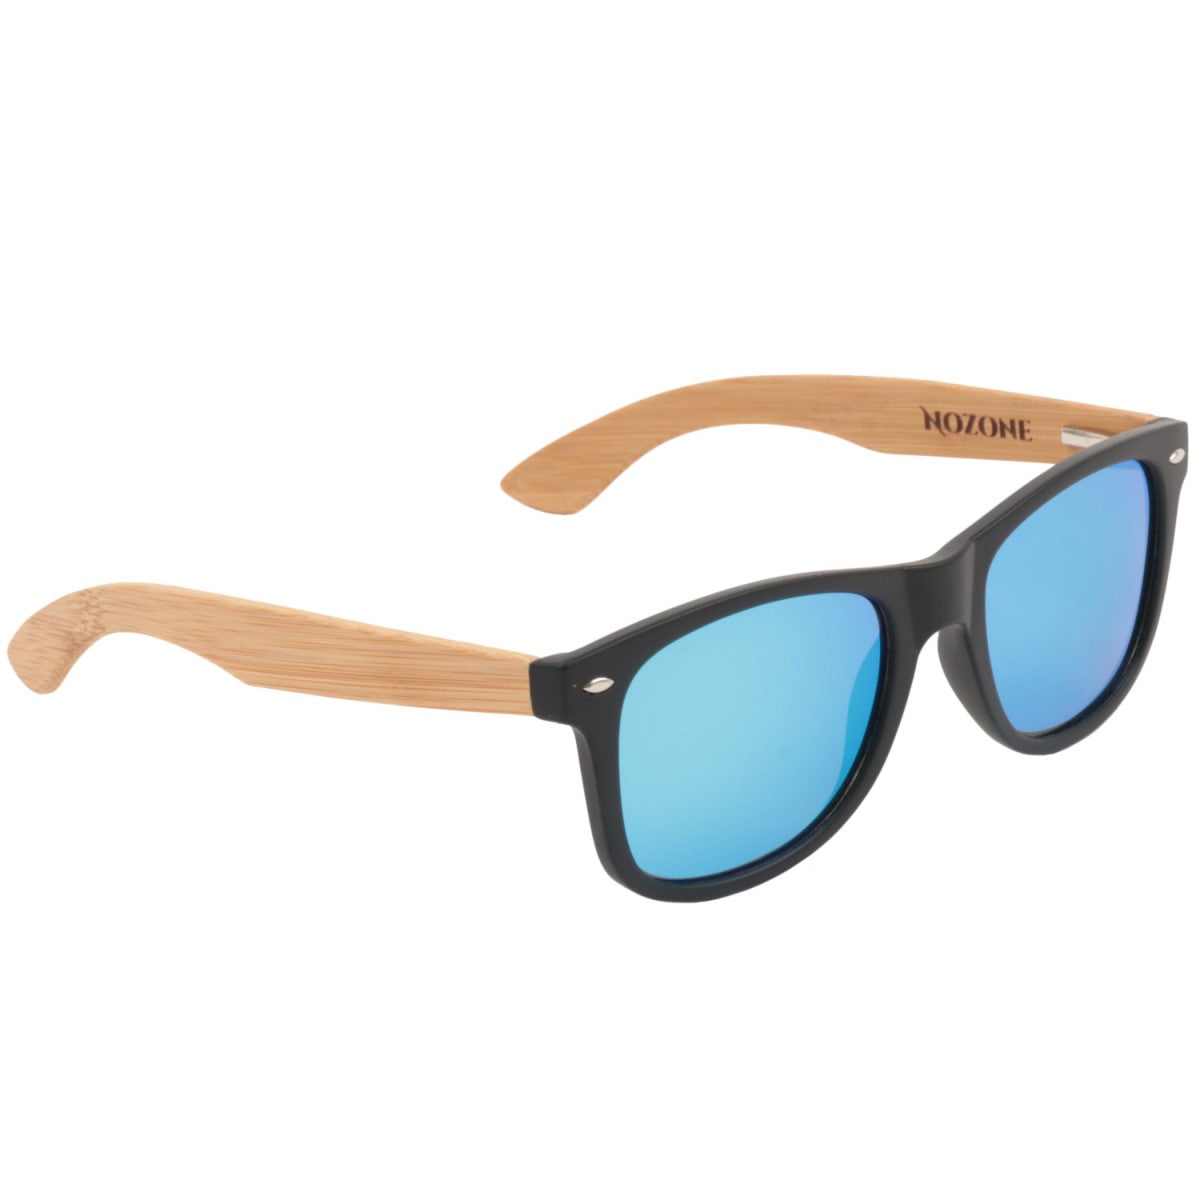 Nozone bamboo sunglasses - UV400 polarized glare-resistant blue lenses - protective travel case #style_Blue Lenses w/Protective Case